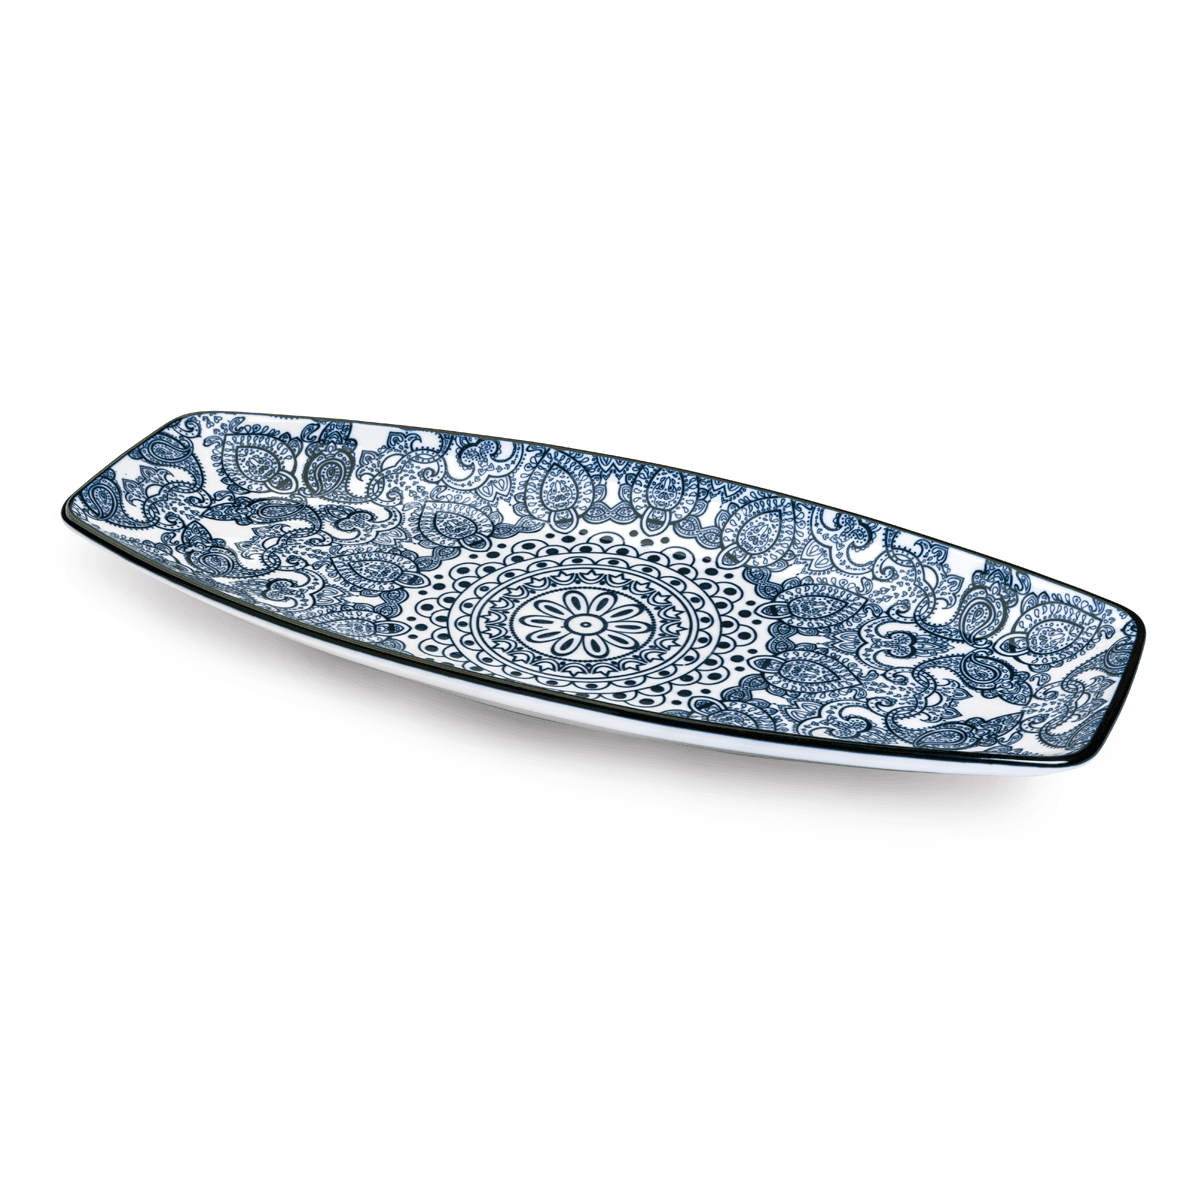 Che Brucia Arabesque Blue Porcelain Boat Shape Plate 14" Blue Ivory Porcelain